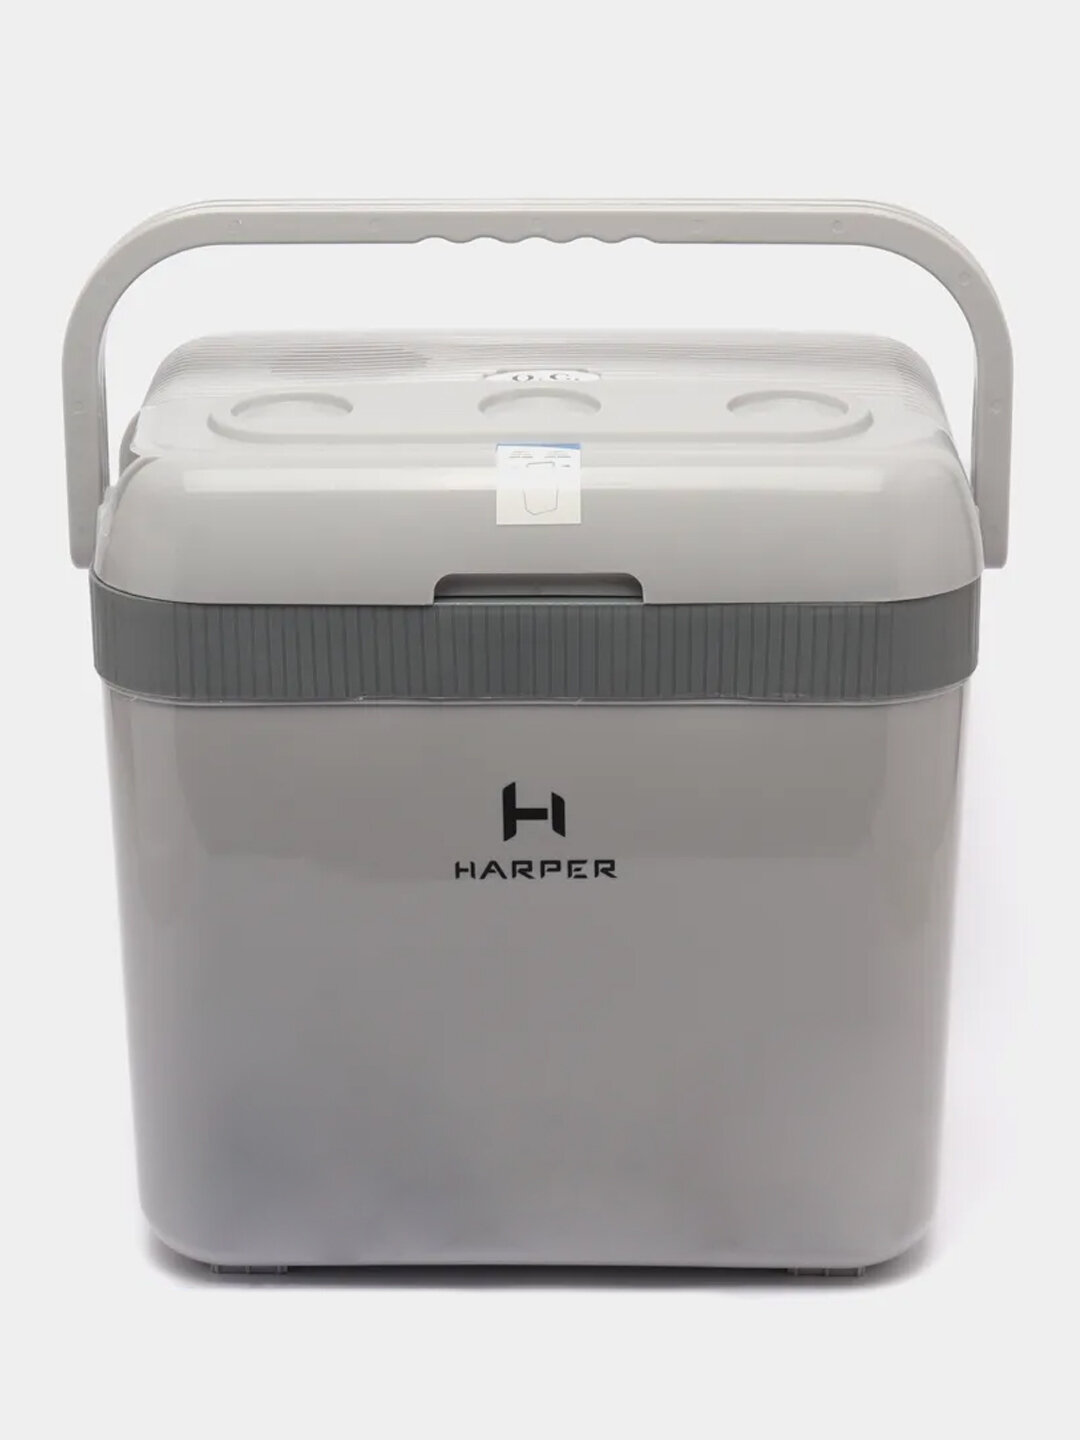 Автомобильный холодильник HARPER CBH-132 Объем - 32л цвет - серый гарантия 1 год